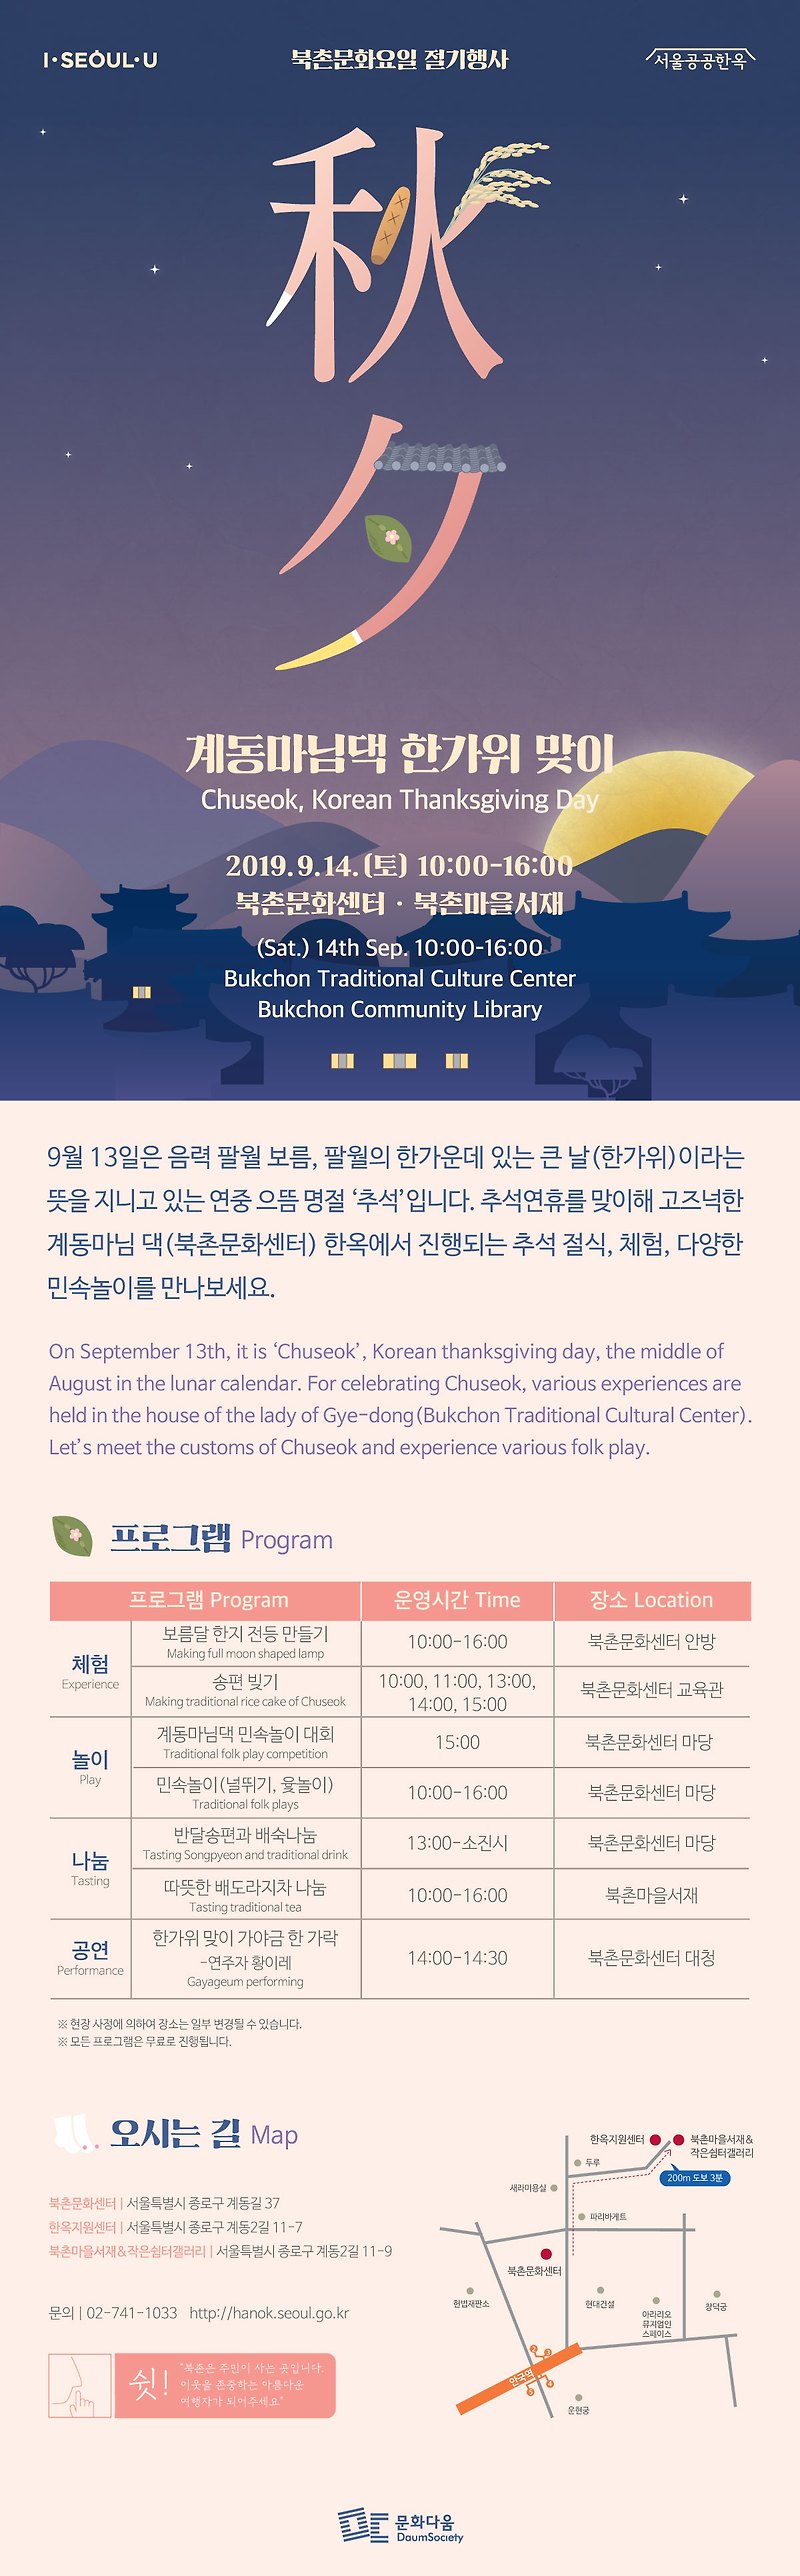 [서울시] 북촌문화센터 계동마님댁 한가위맞이 행사